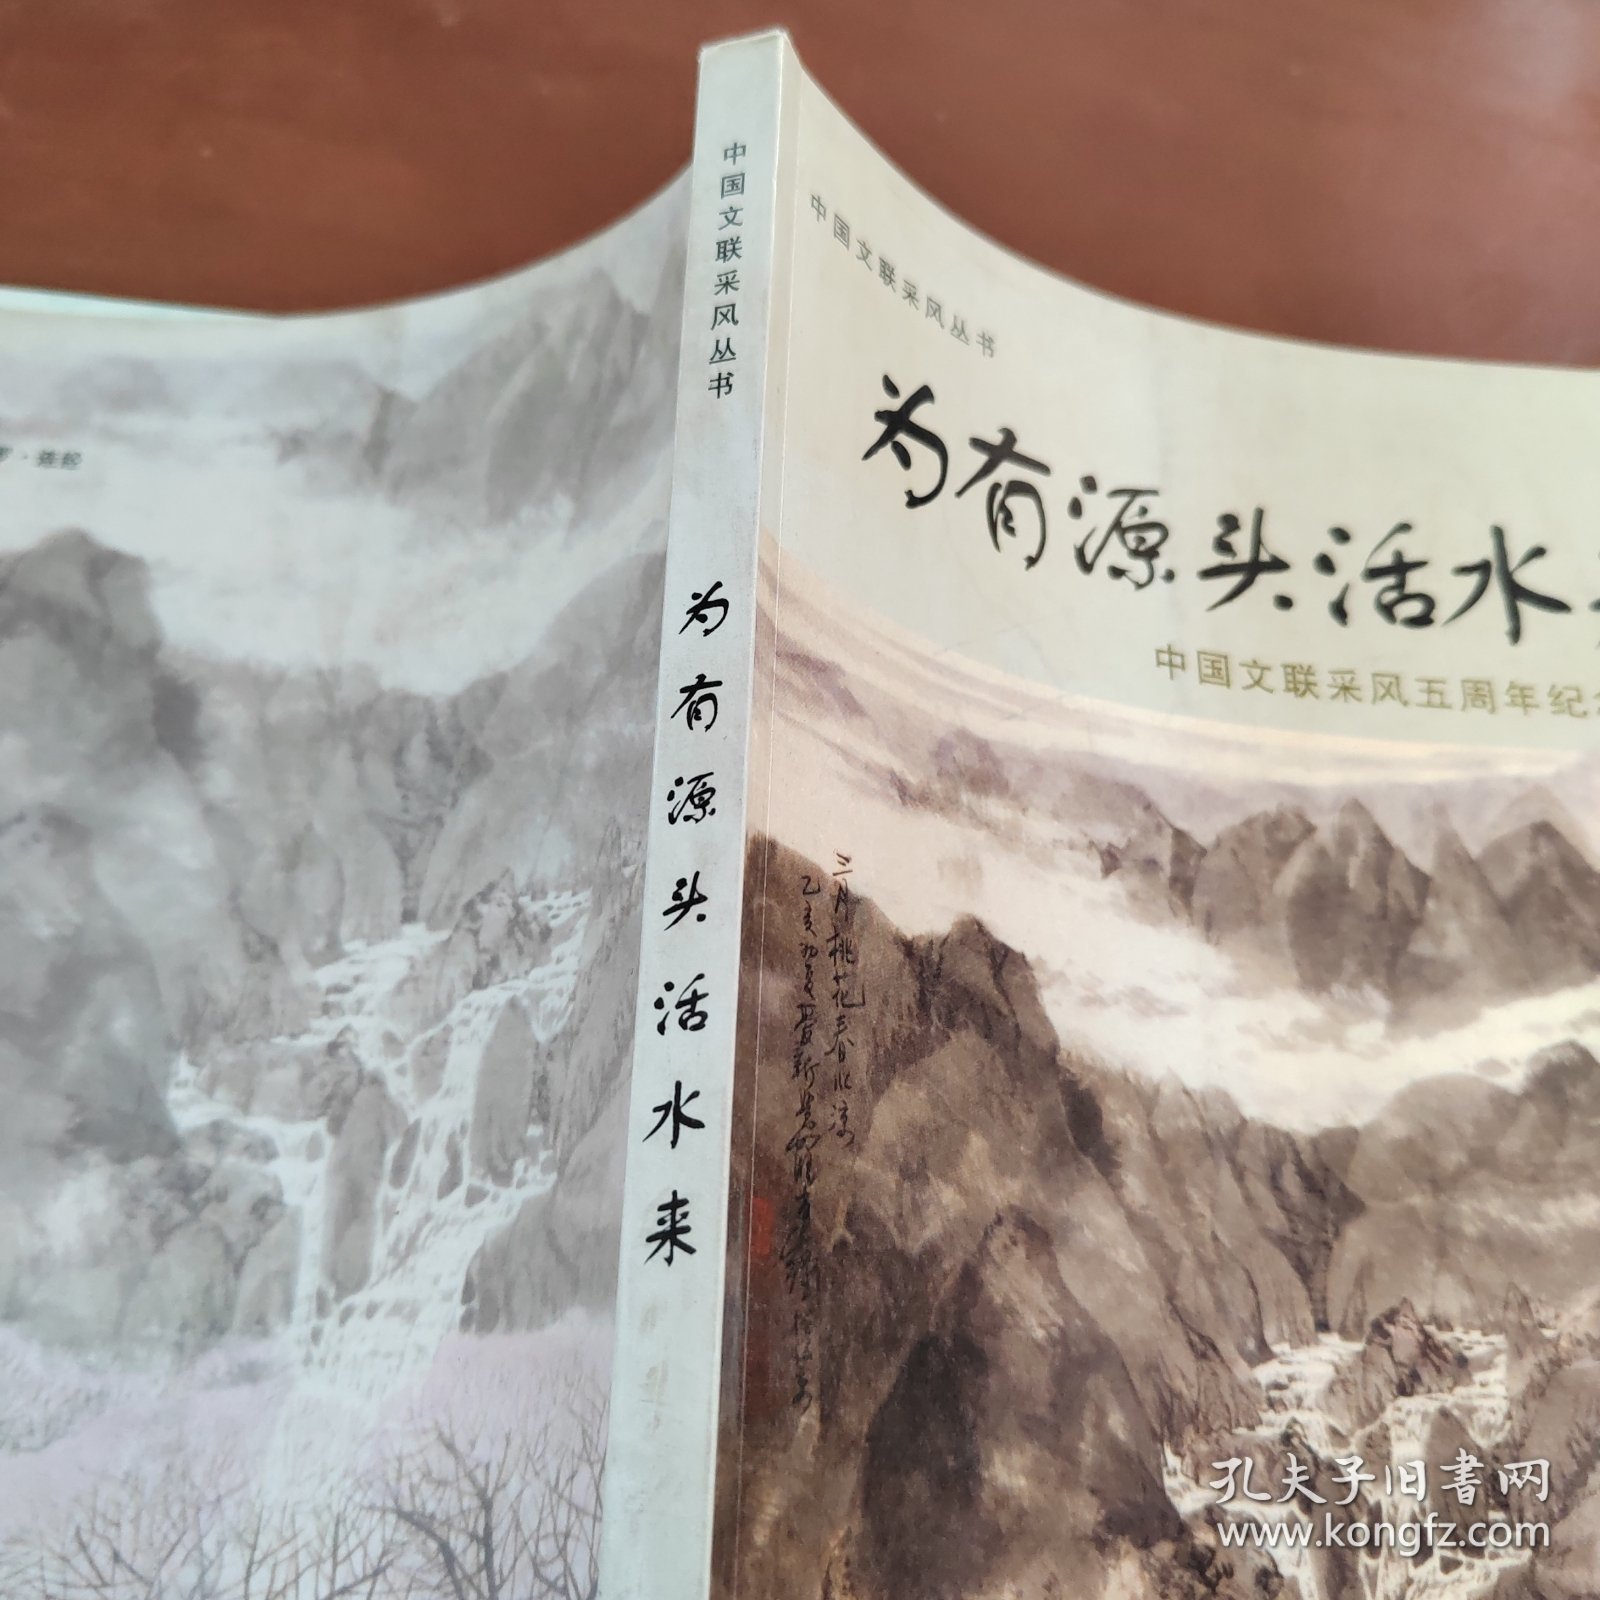 为有源头活水来:中国文联采风五周年纪念文集